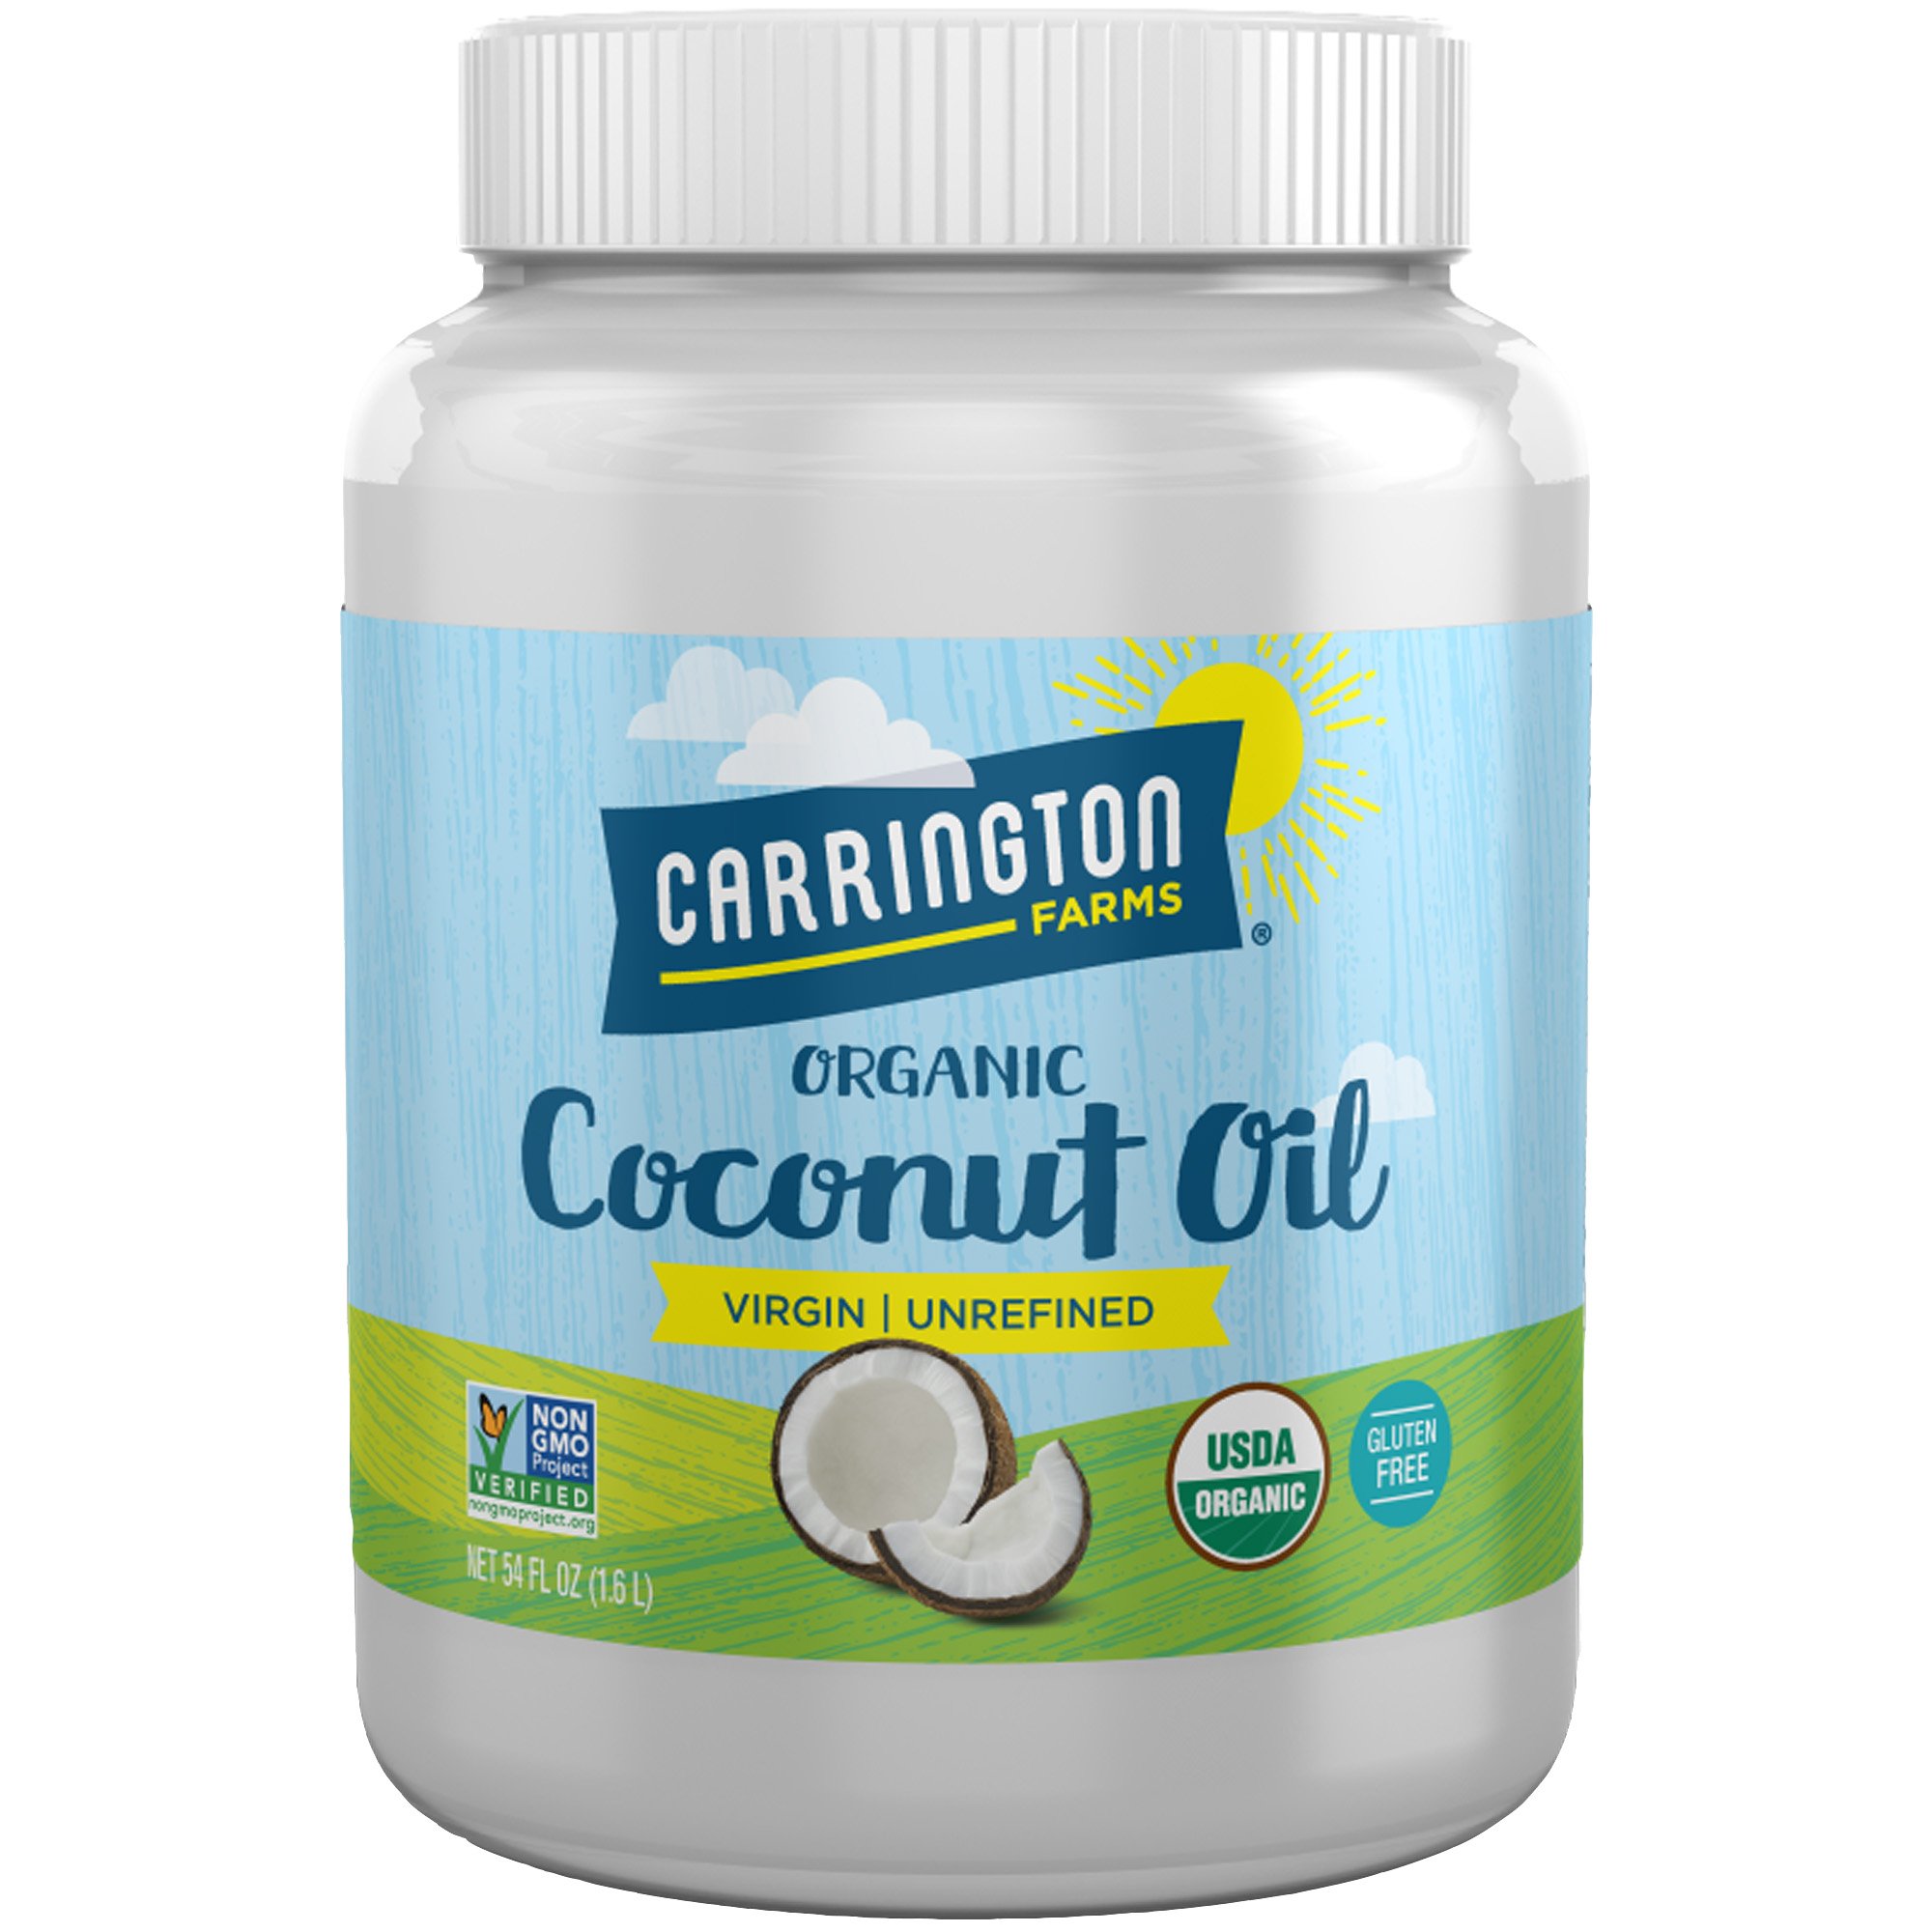 Great Value Organic Unrefined Virgin Coconut Oil, 54 fl oz